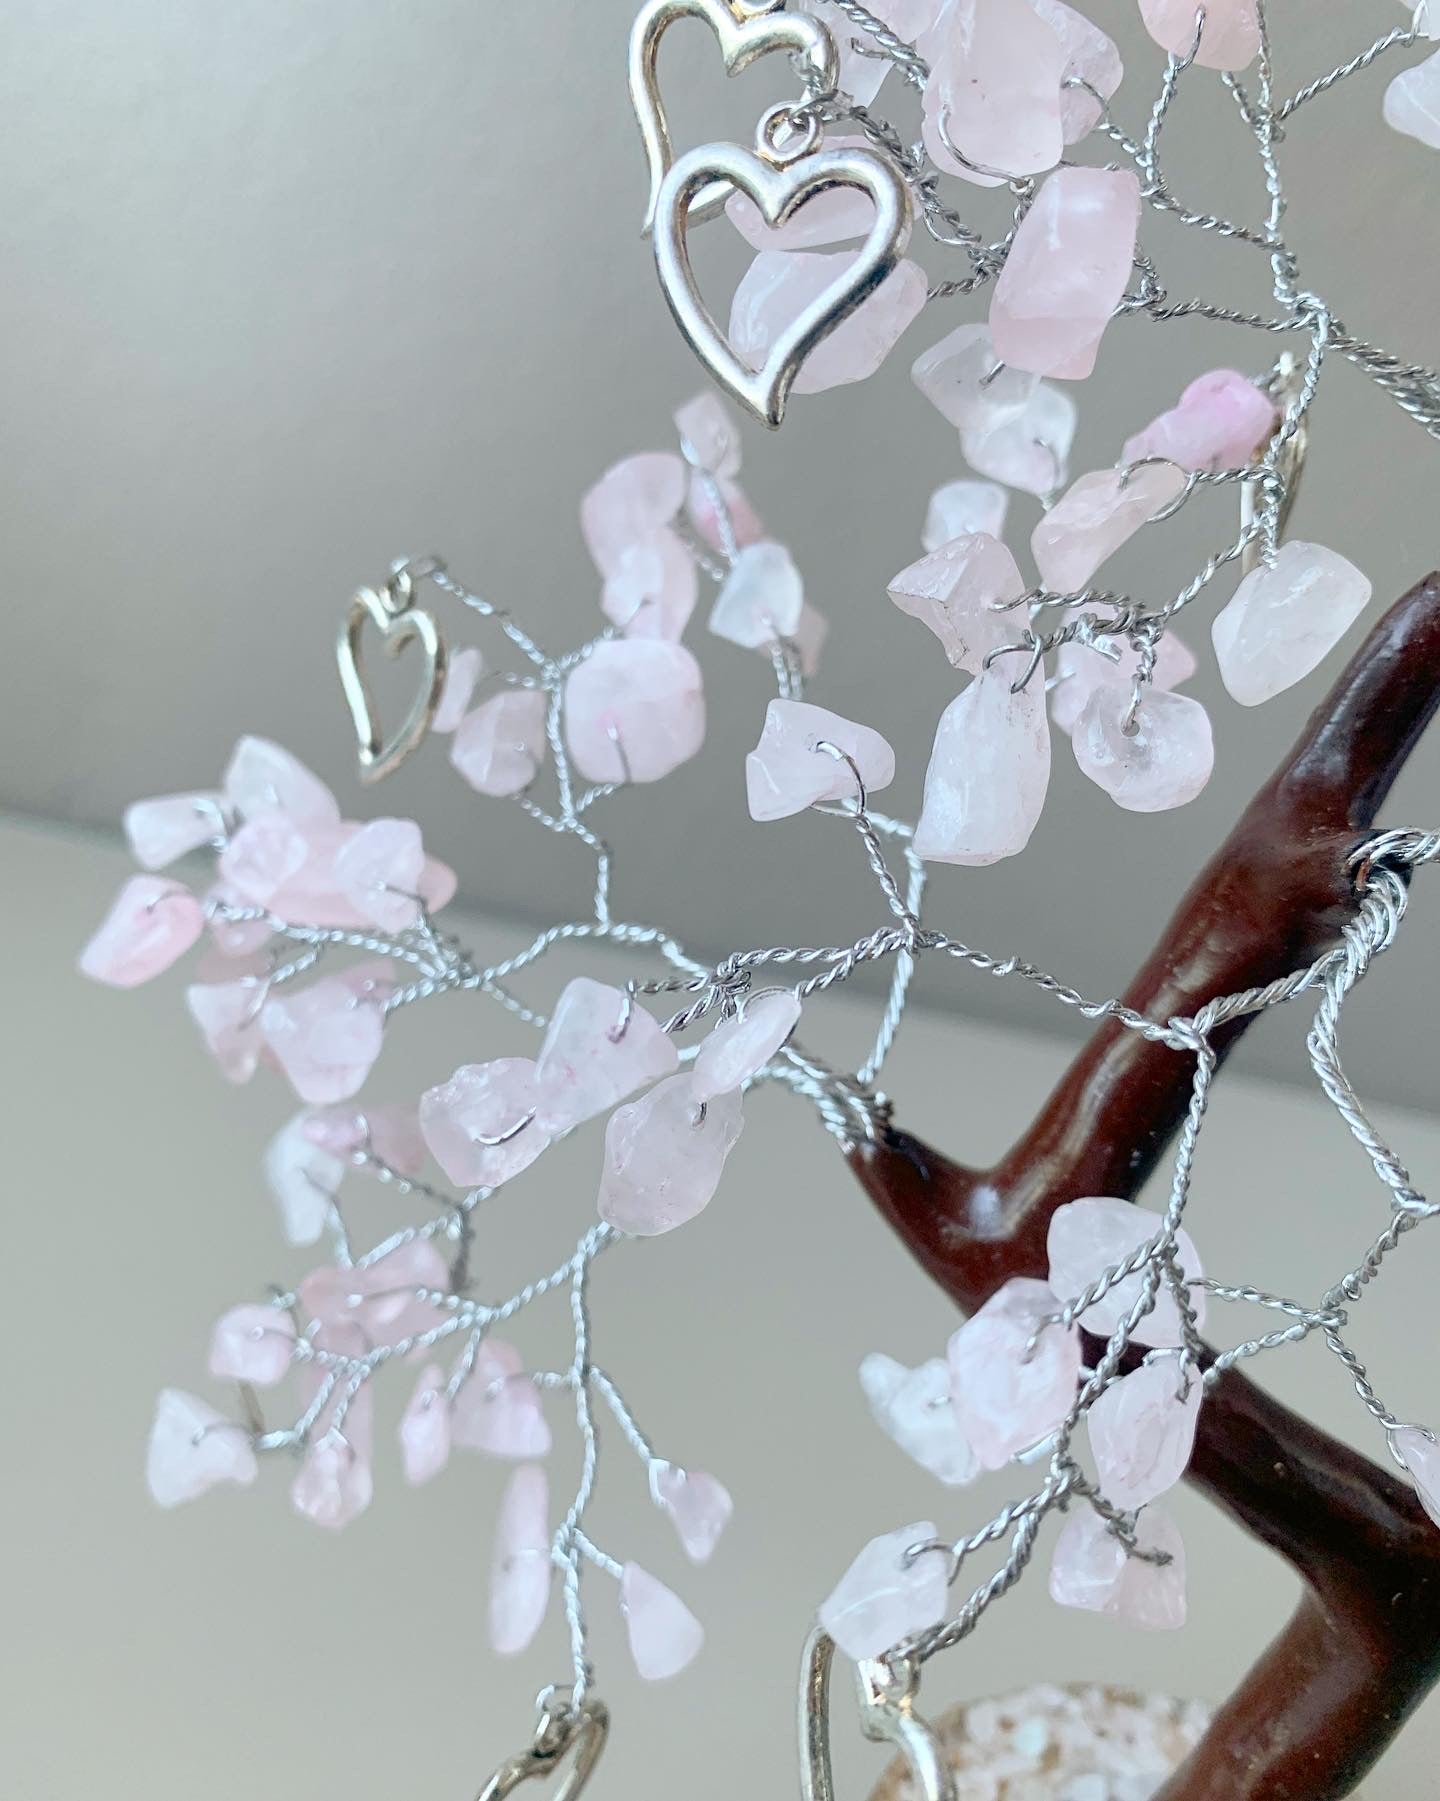 Rose Quartz “Love” Bonsai Gem Tree